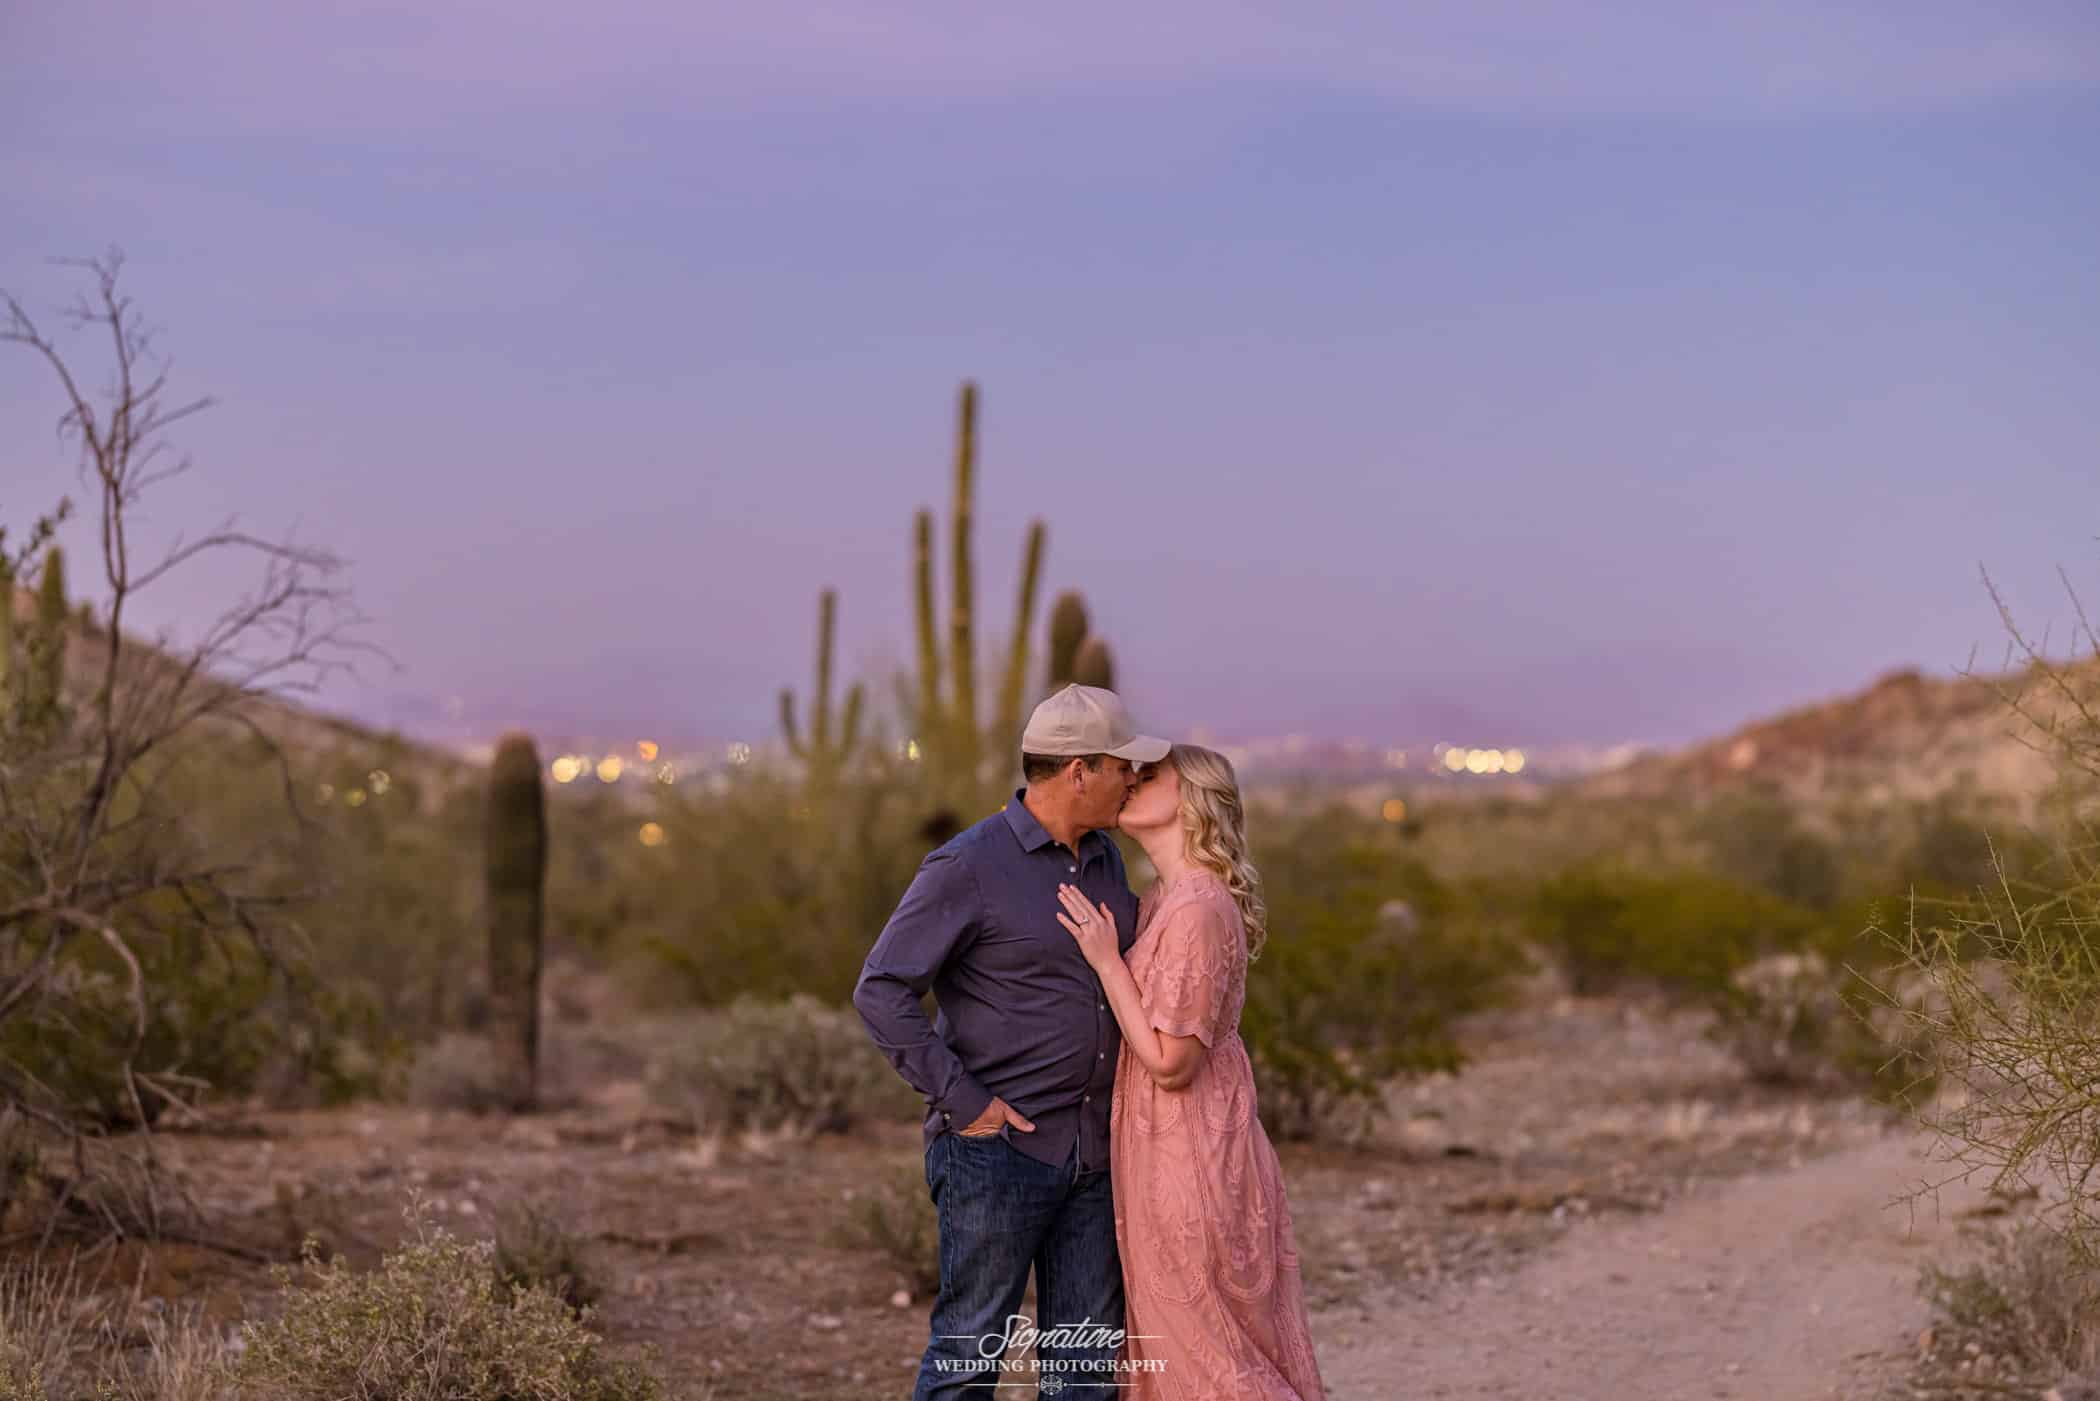 Couple kissing in desert at sunset